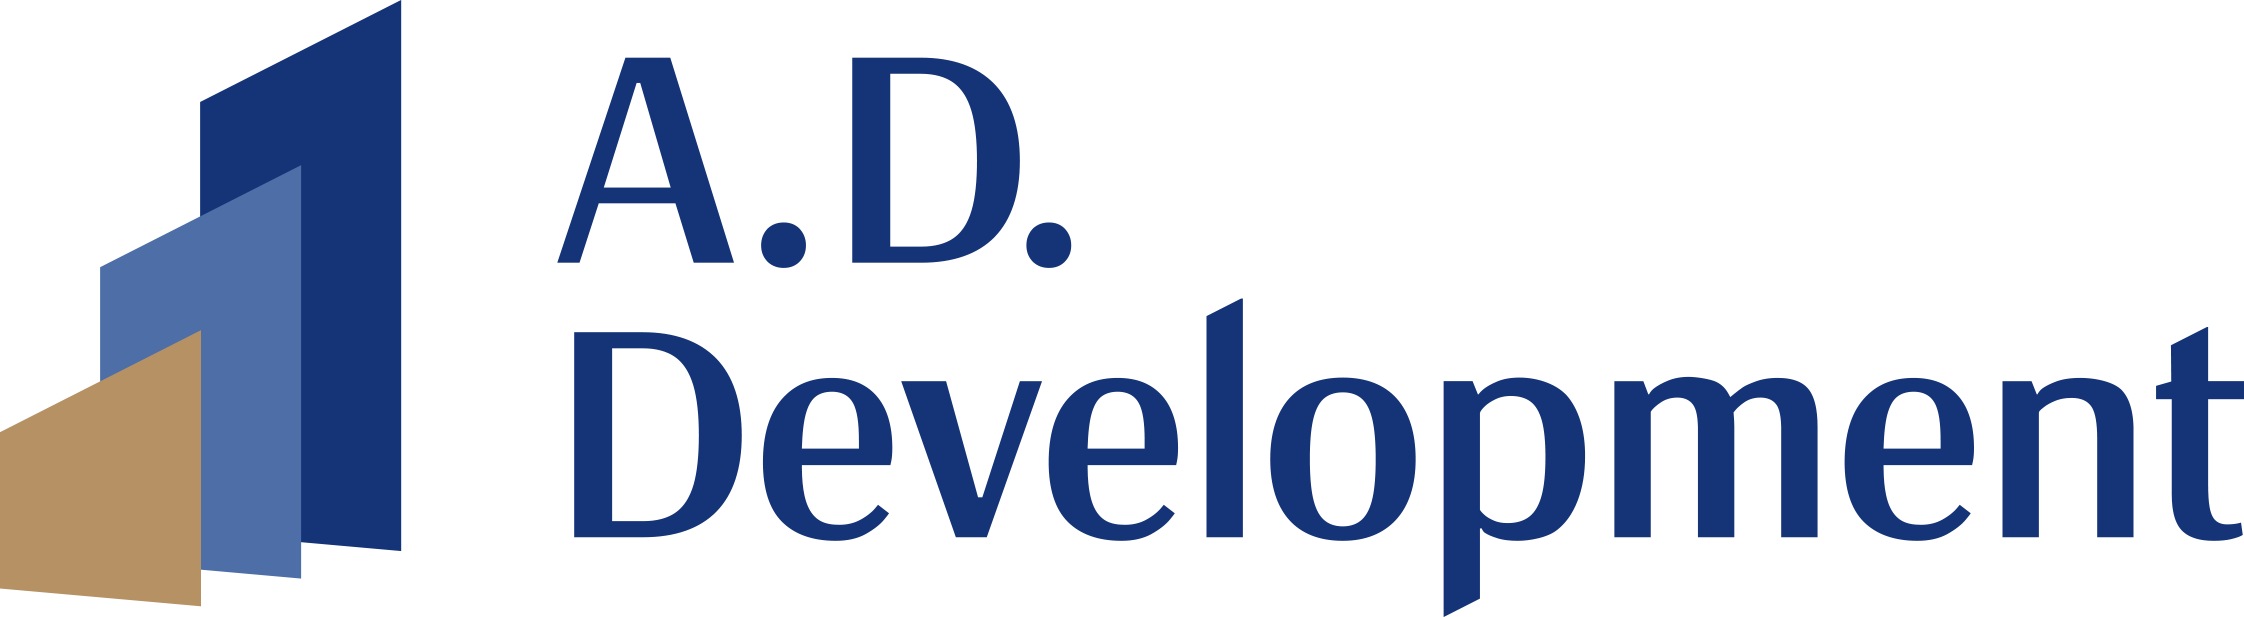 A.D. Development logo_main